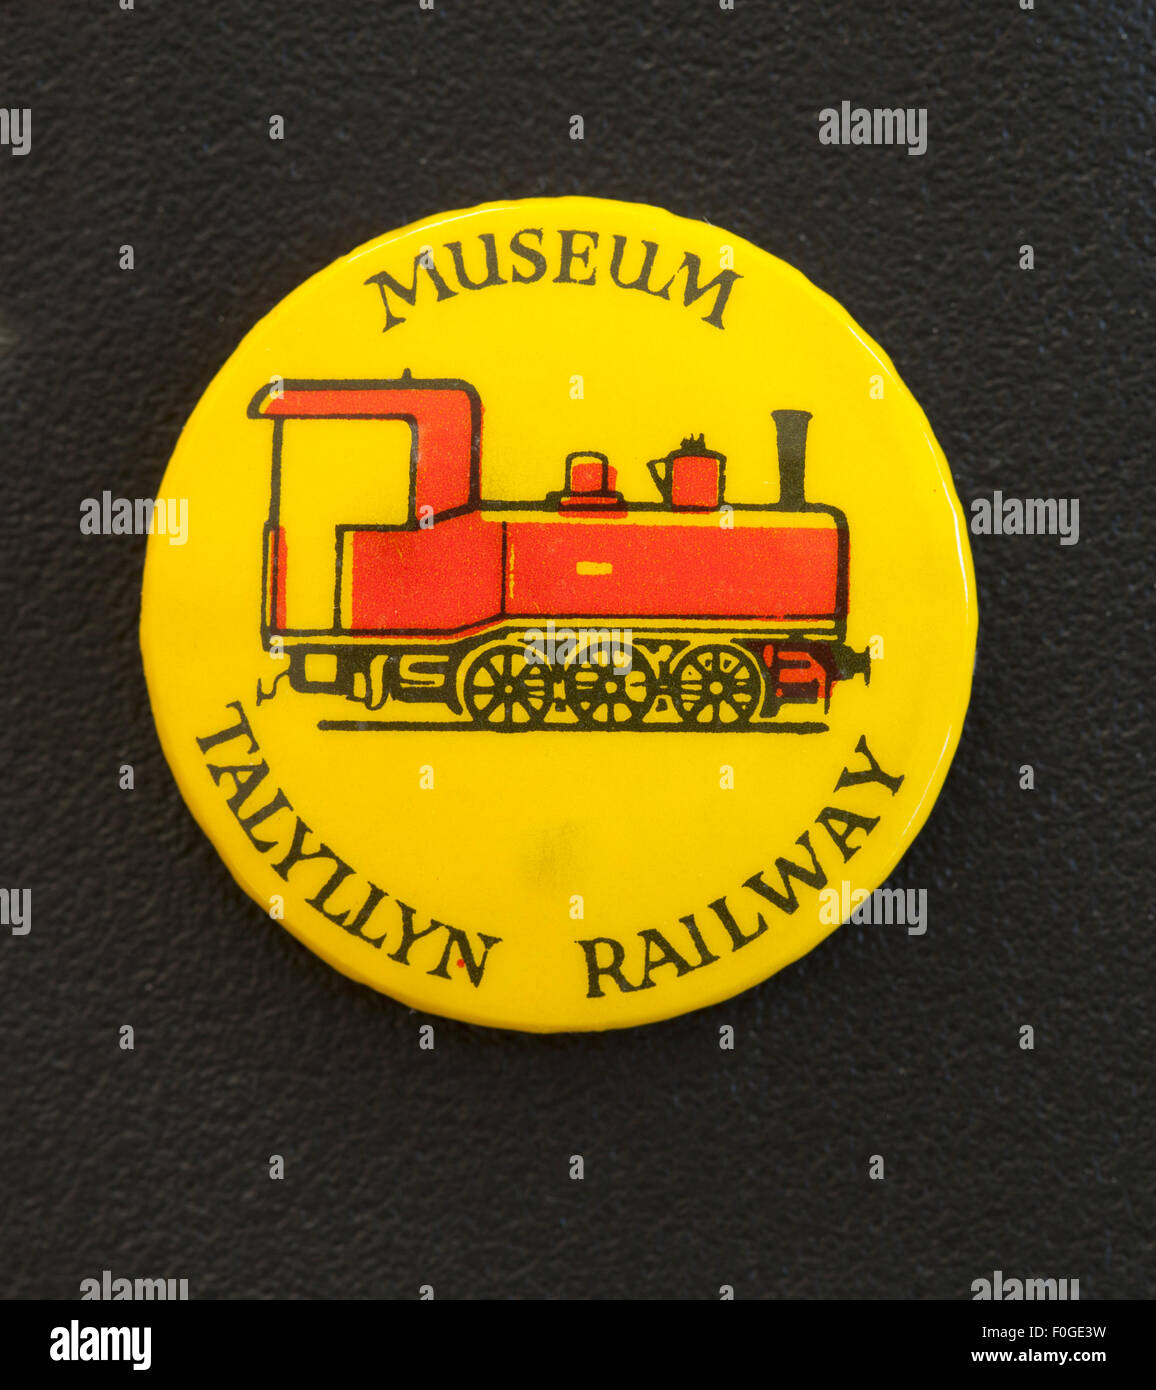 Vintage Pin Botón insignia publicidad Talyllyn Railway Museum Foto de stock